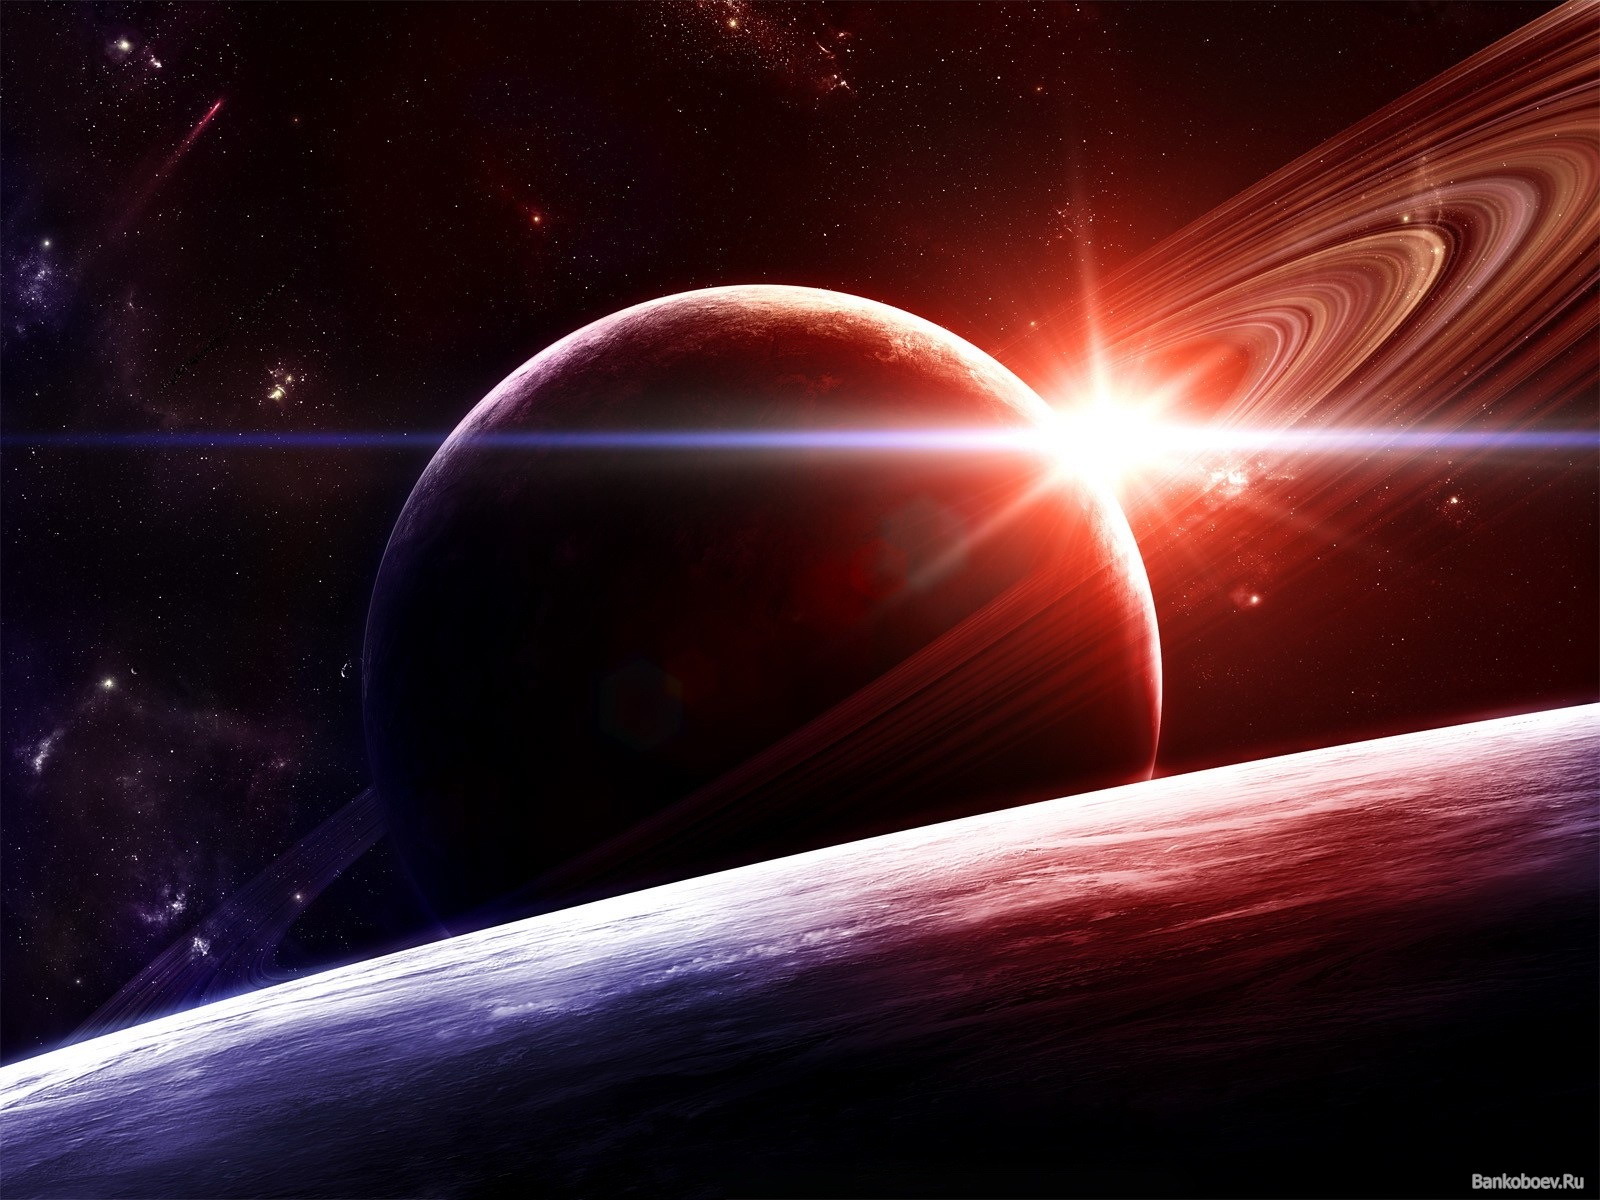 壁紙 惑星 環 天体 土星 宇宙空間 ダウンロード 写真